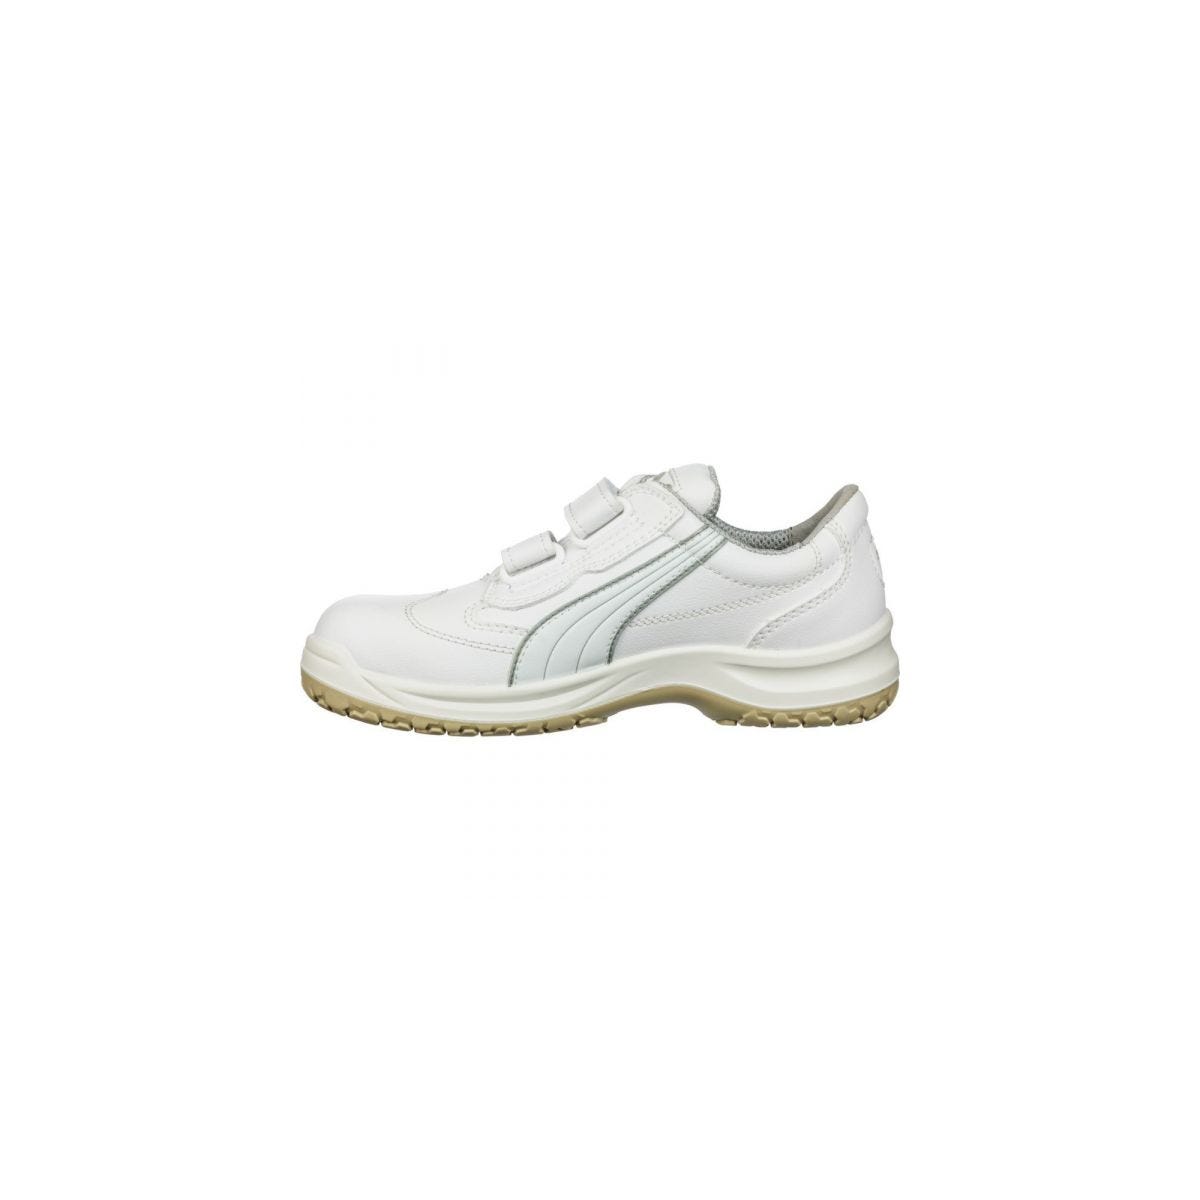 Chaussures de sécurité Absolute Low S2 Blanc - Puma - Taille 42 1